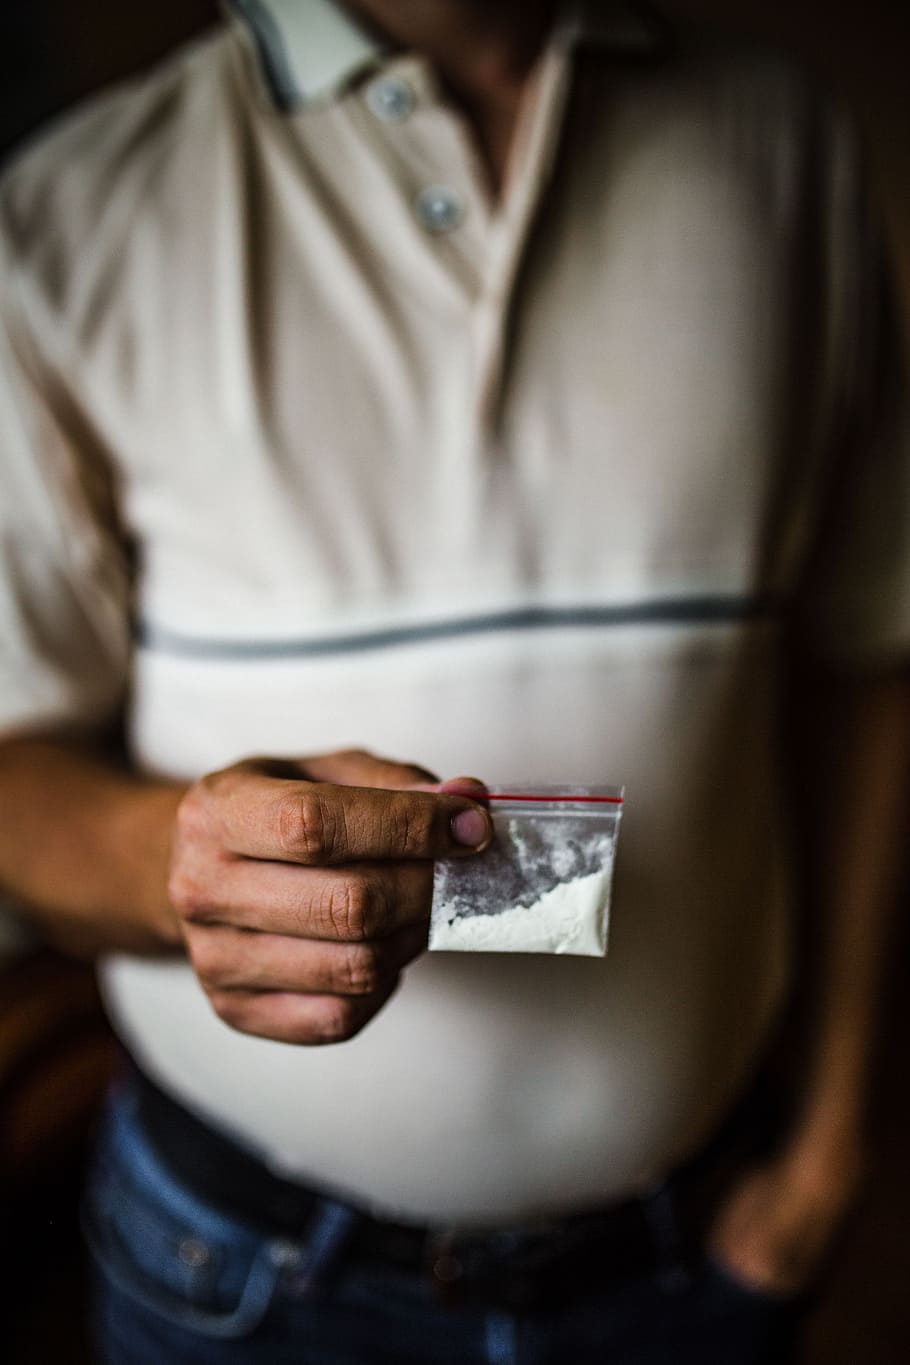 narcotraficantes de netflix, narcos, polvo, coca cola, drogas, cocaína, adicción, adicto, crimen, criminal